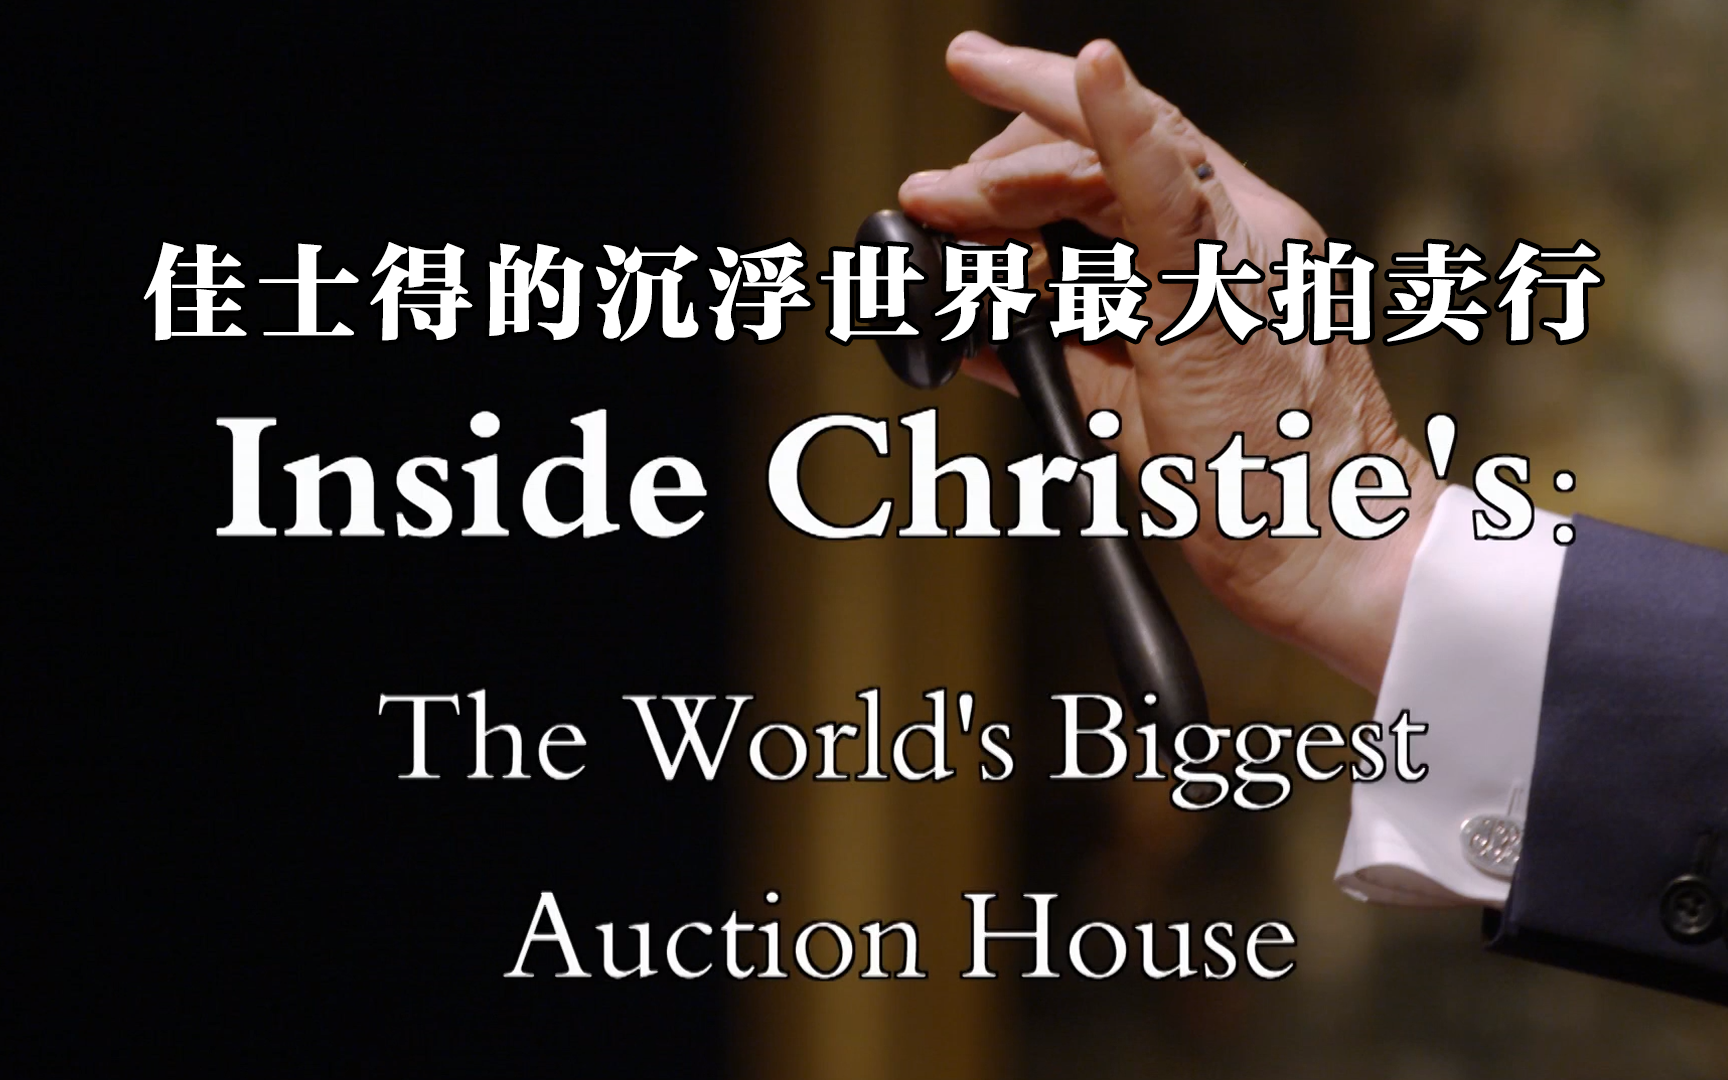 【纪录片】佳士得的沉浮世界最大拍卖行 Inside Christie's: The World's Biggest Auction House